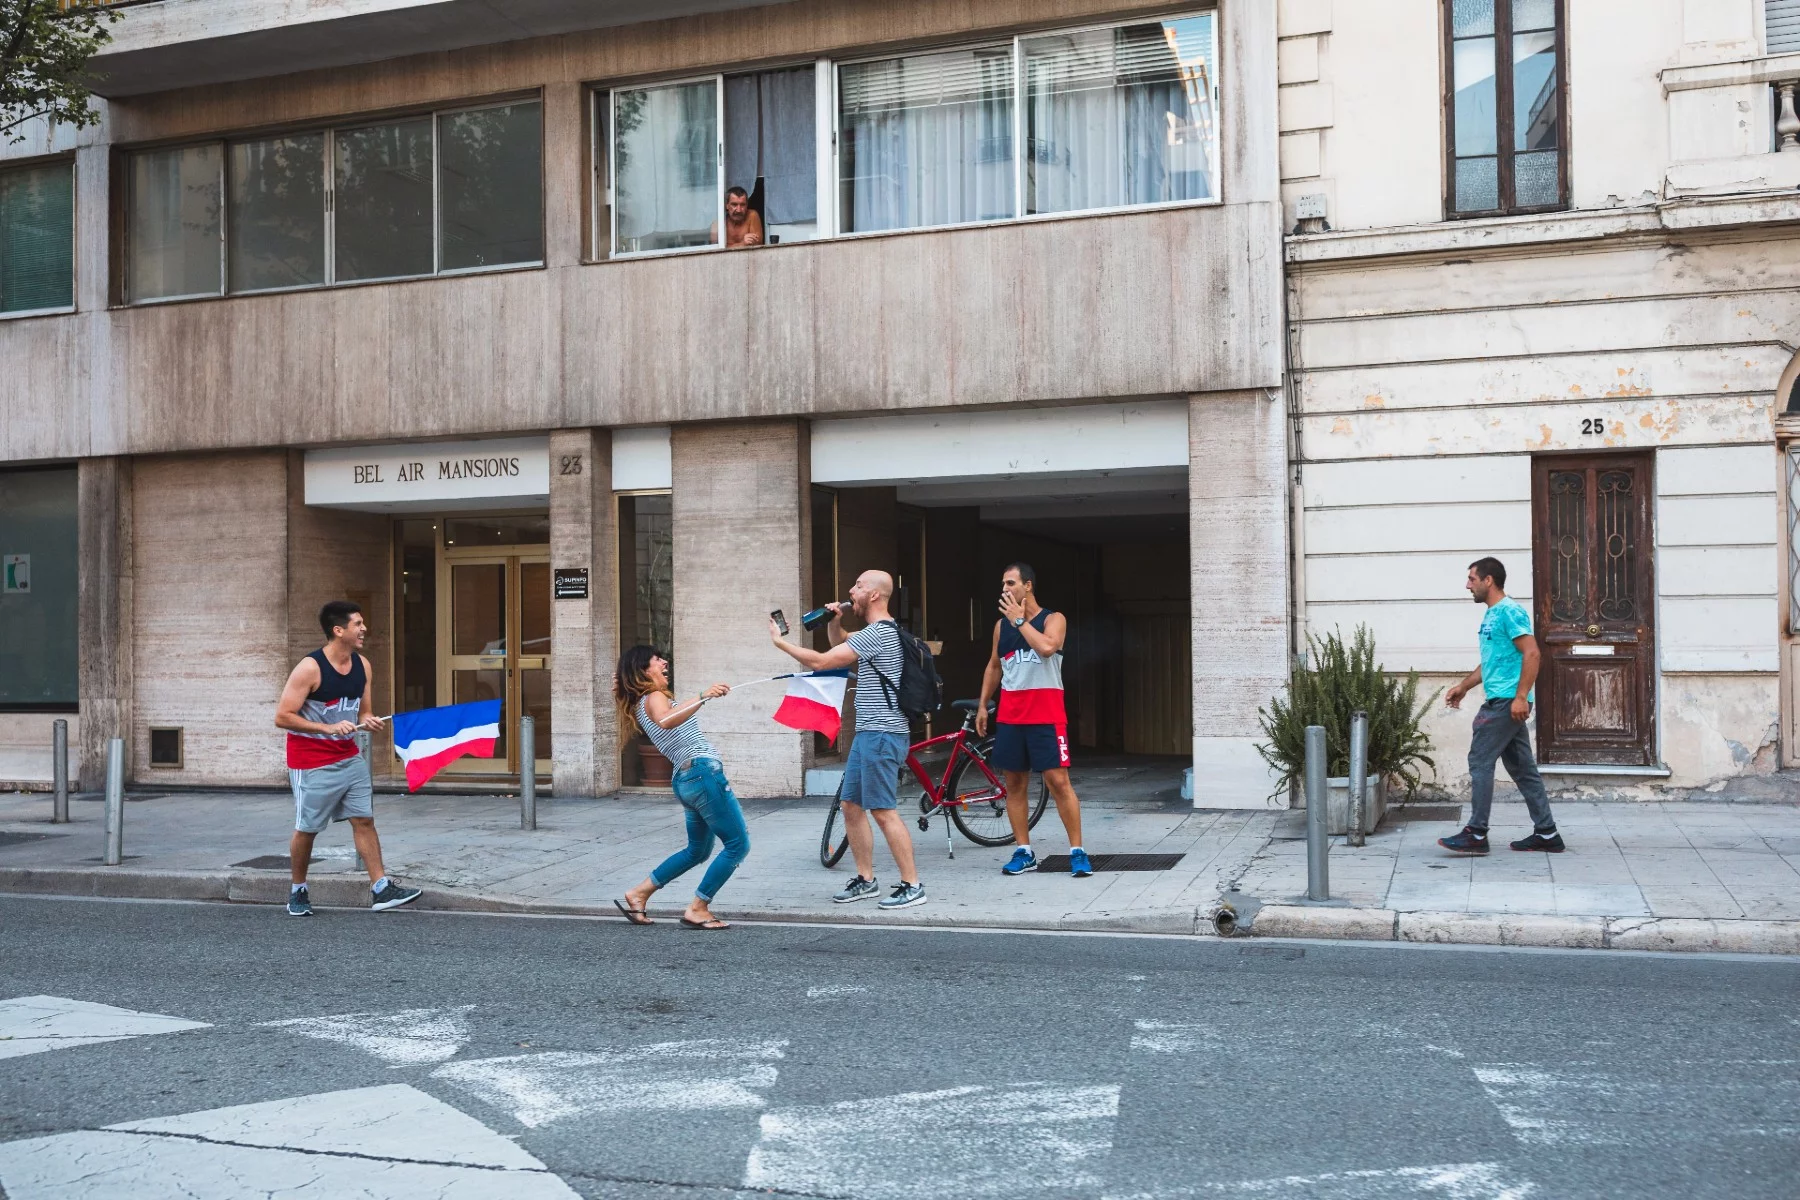 Bir apartmanın önündeki kaldırımda Fransız bayrakları sallayan ve kutlama yapan insanlar.